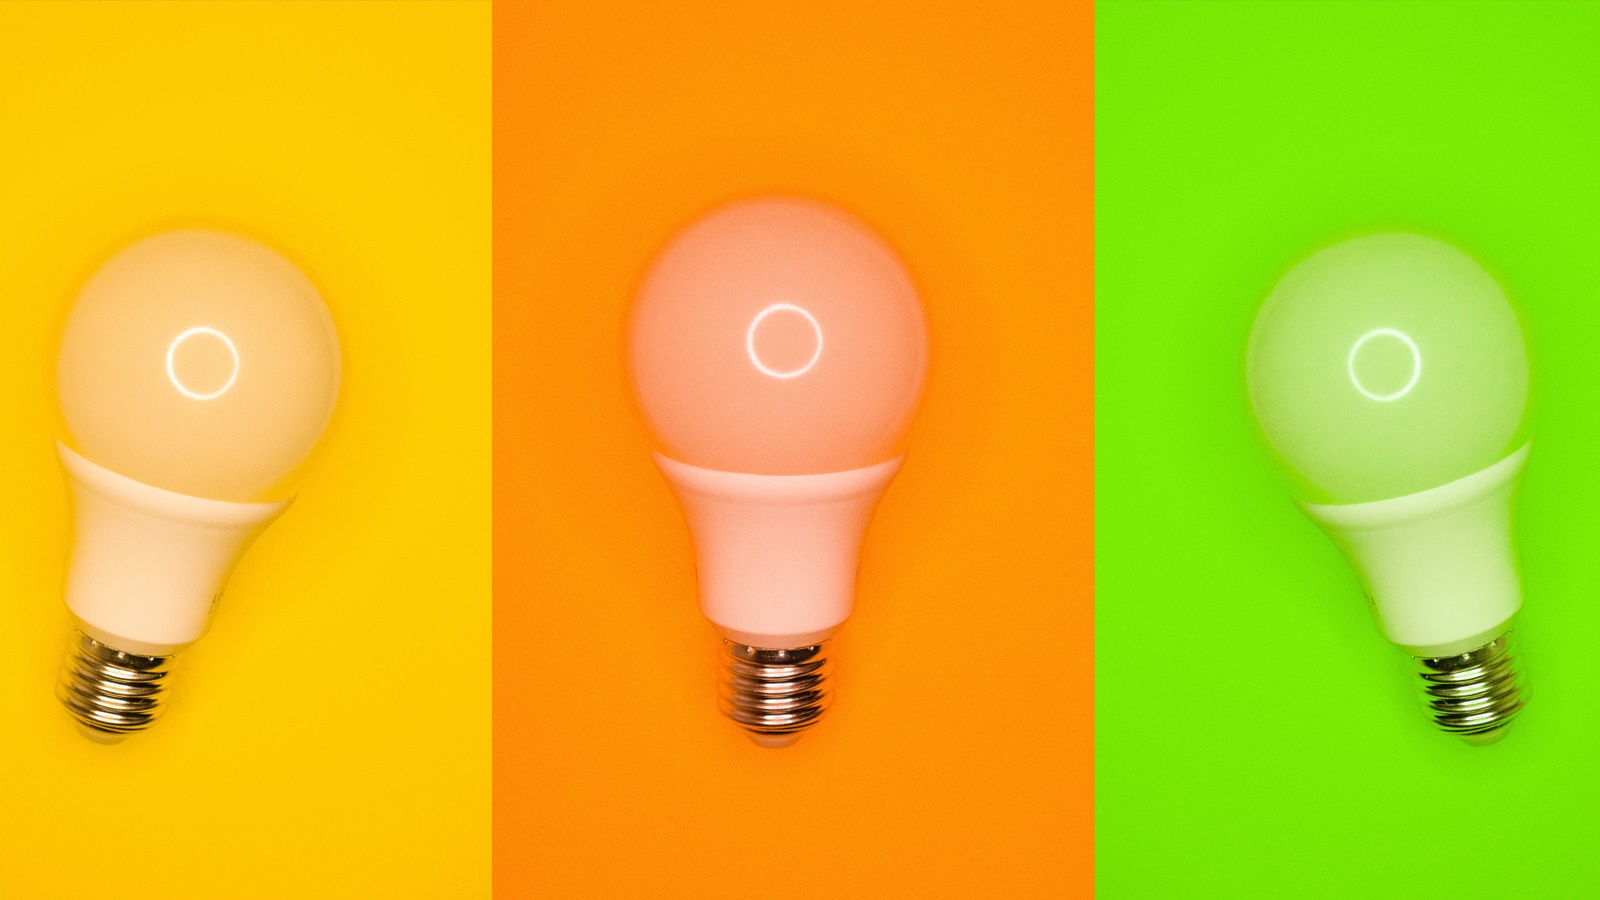 Průvodce LED žárovkami 2024 → Jak vybrat, nejlepší žárovky, výhody a nevýhody